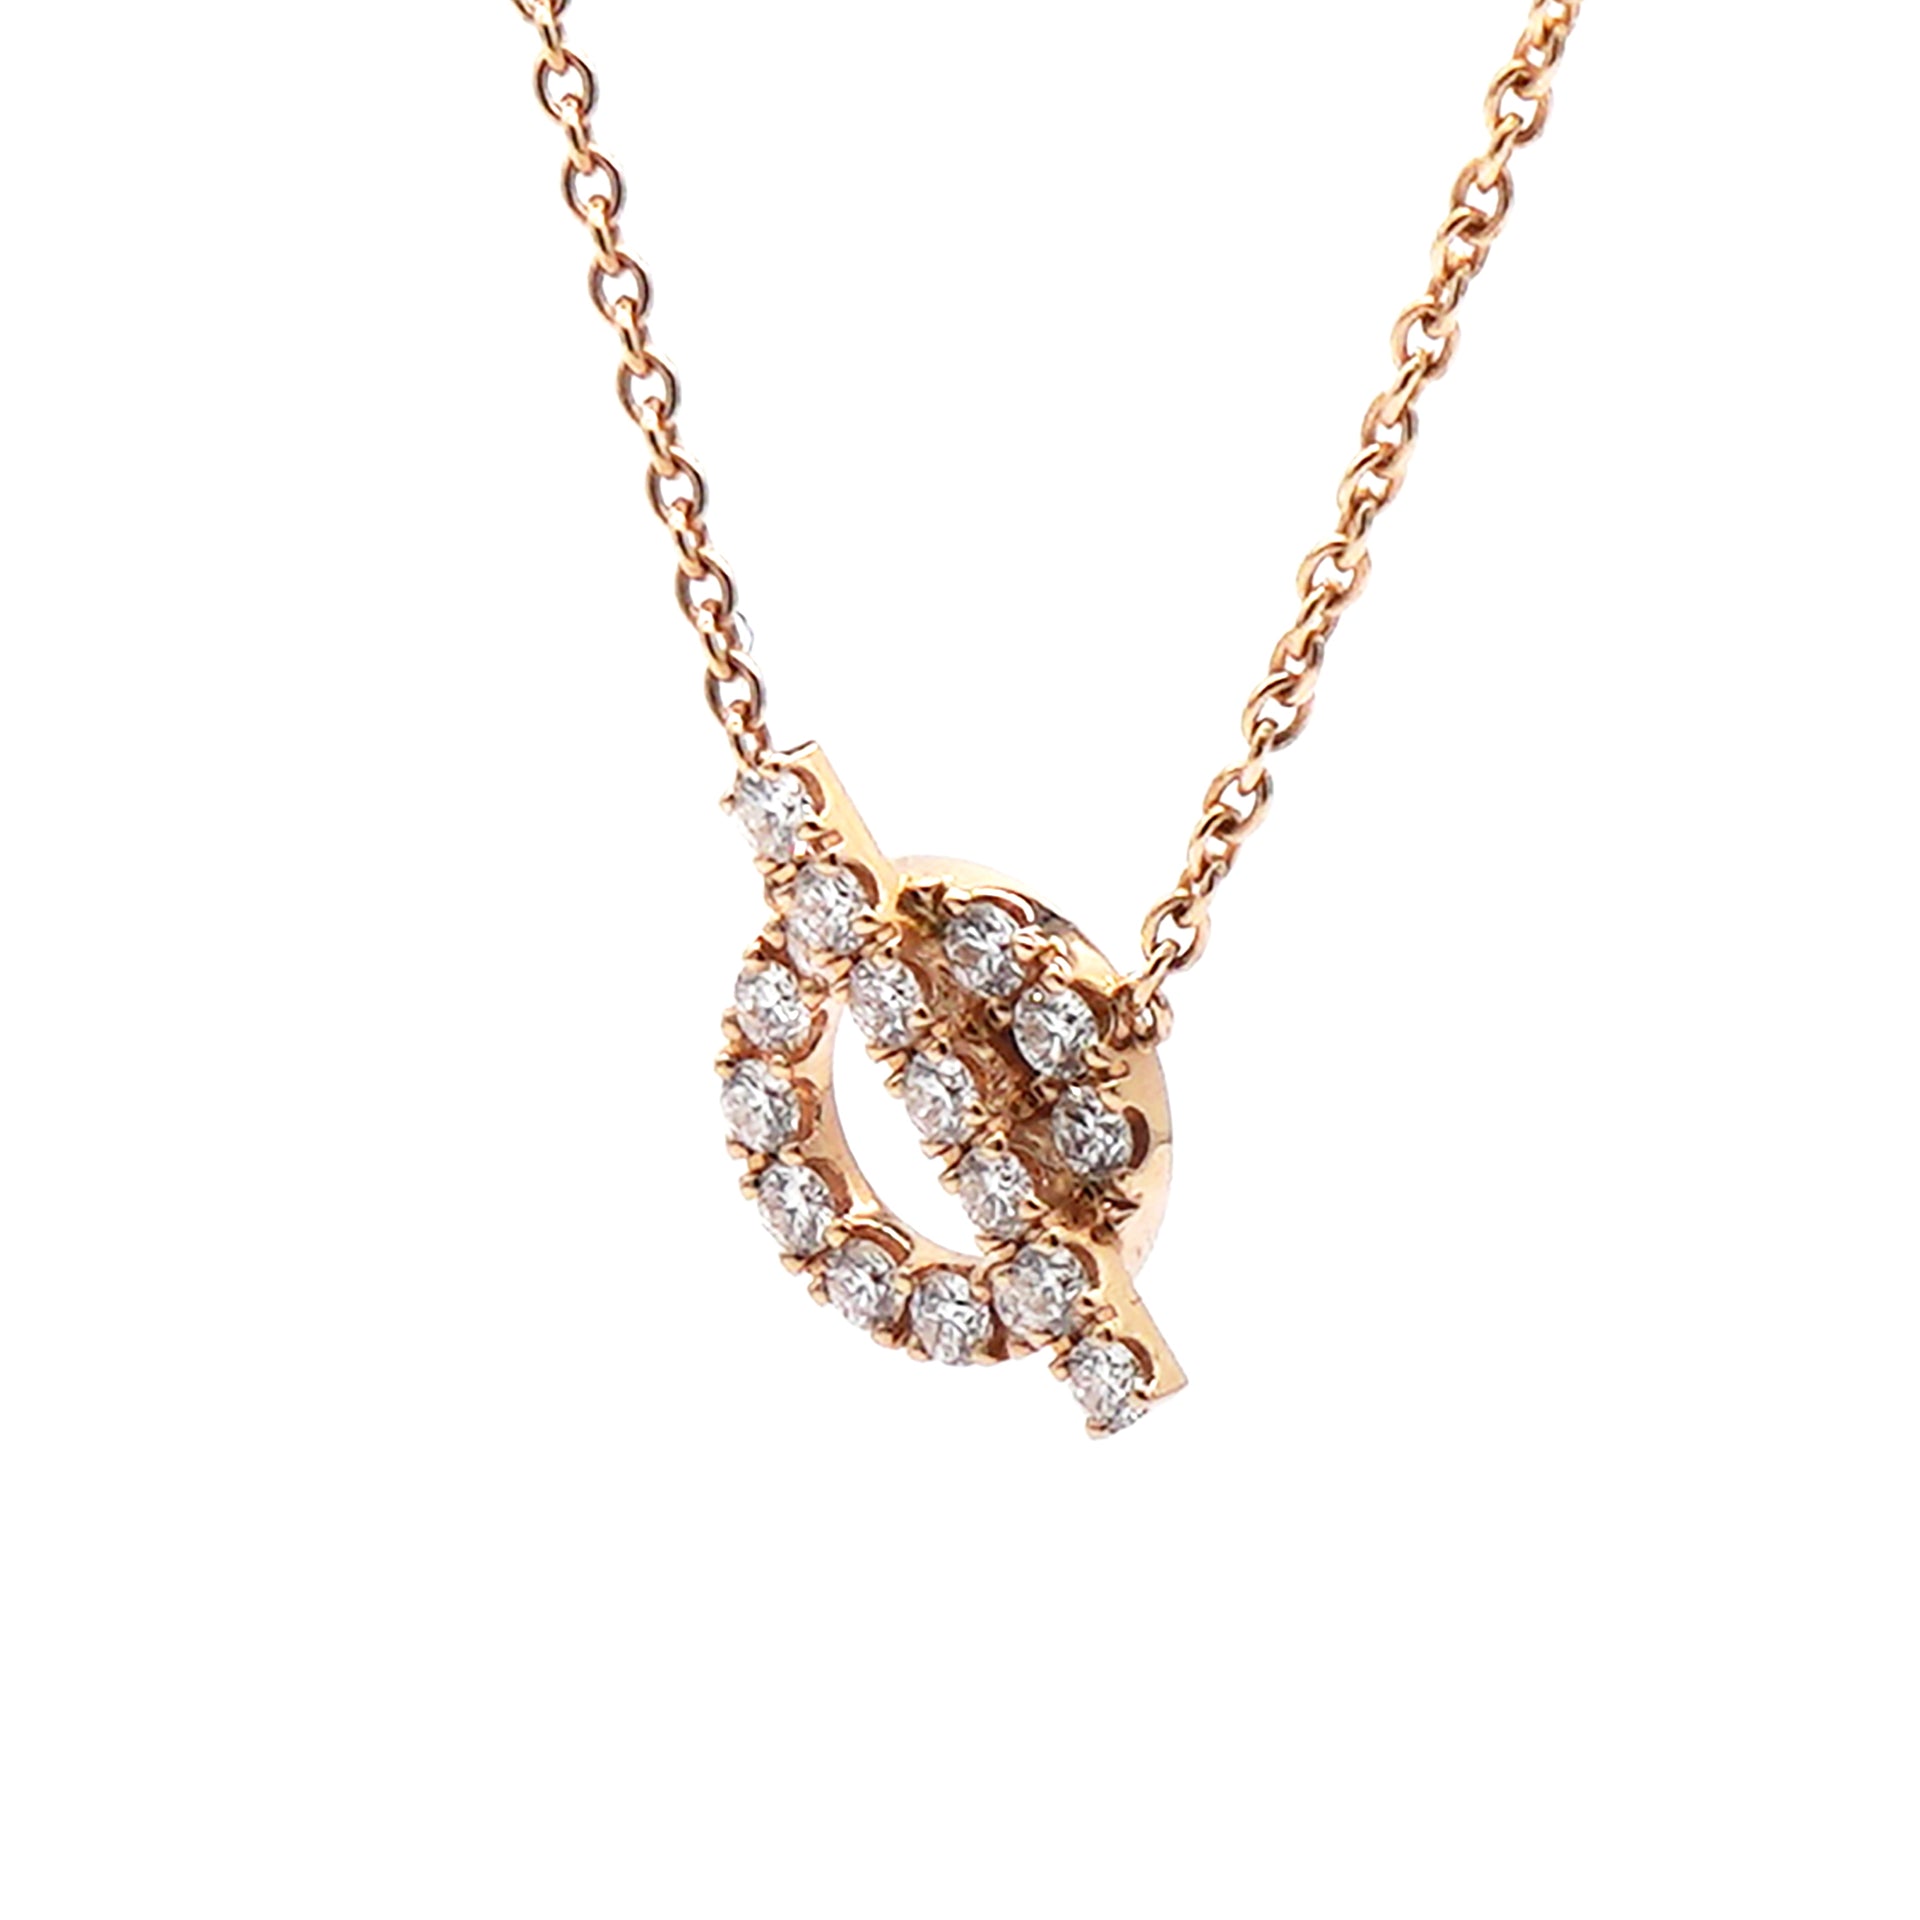 Finesse necklace | Hermès UK